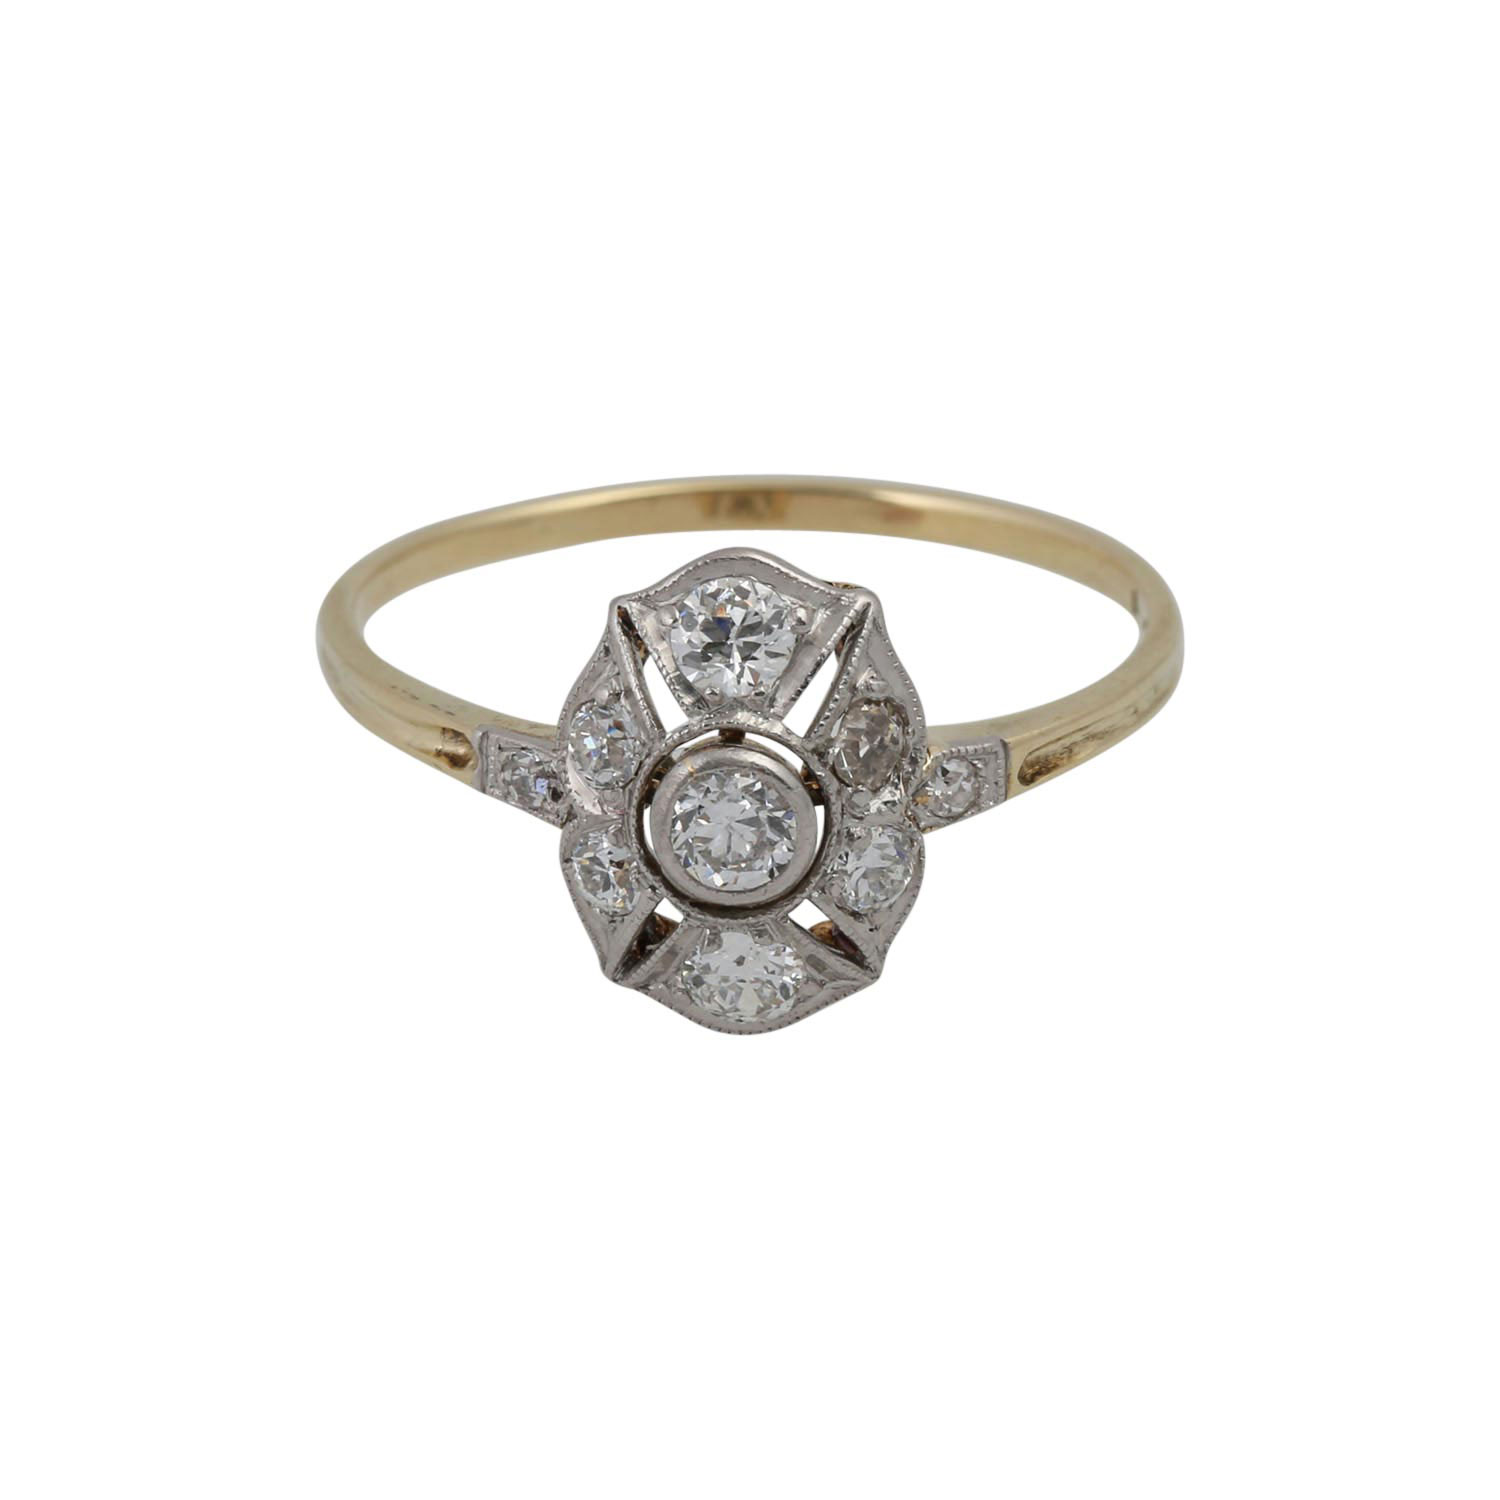 Art Déco zarter Ring mit Altschliffdiamanten von zus. ca. 0,25 ct, - Image 2 of 4